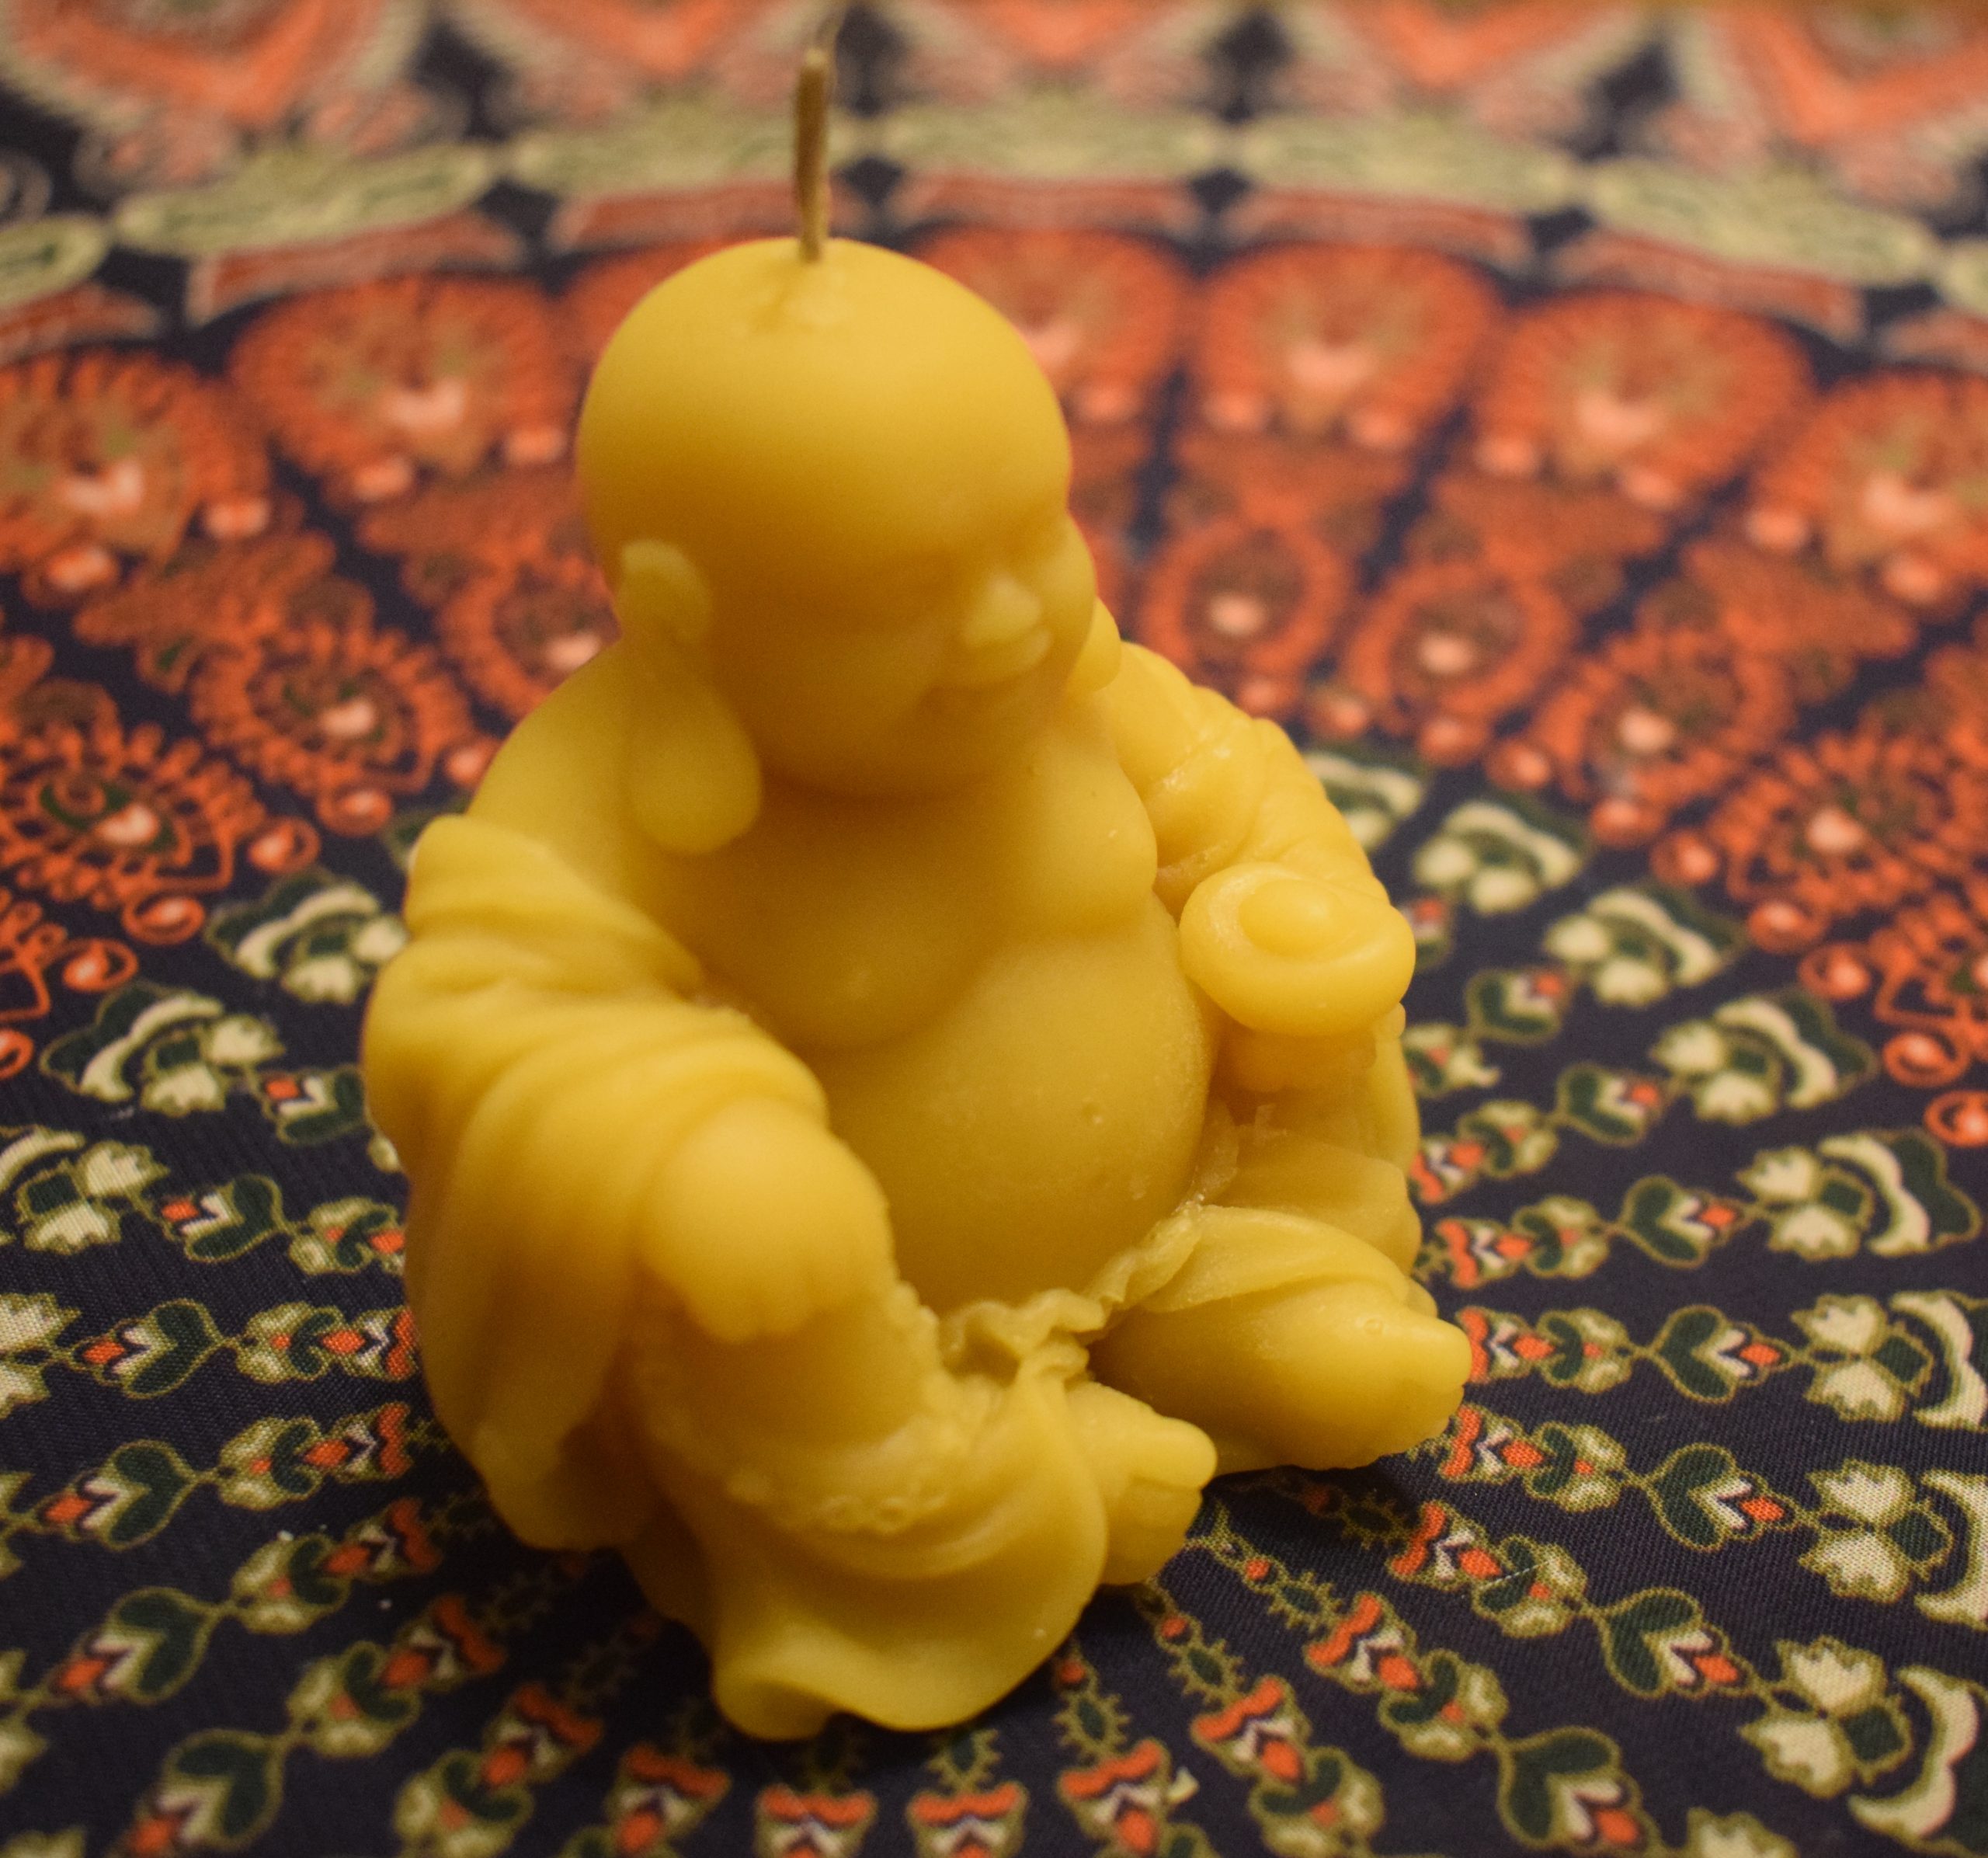 Žvakė „Buda“ didelė